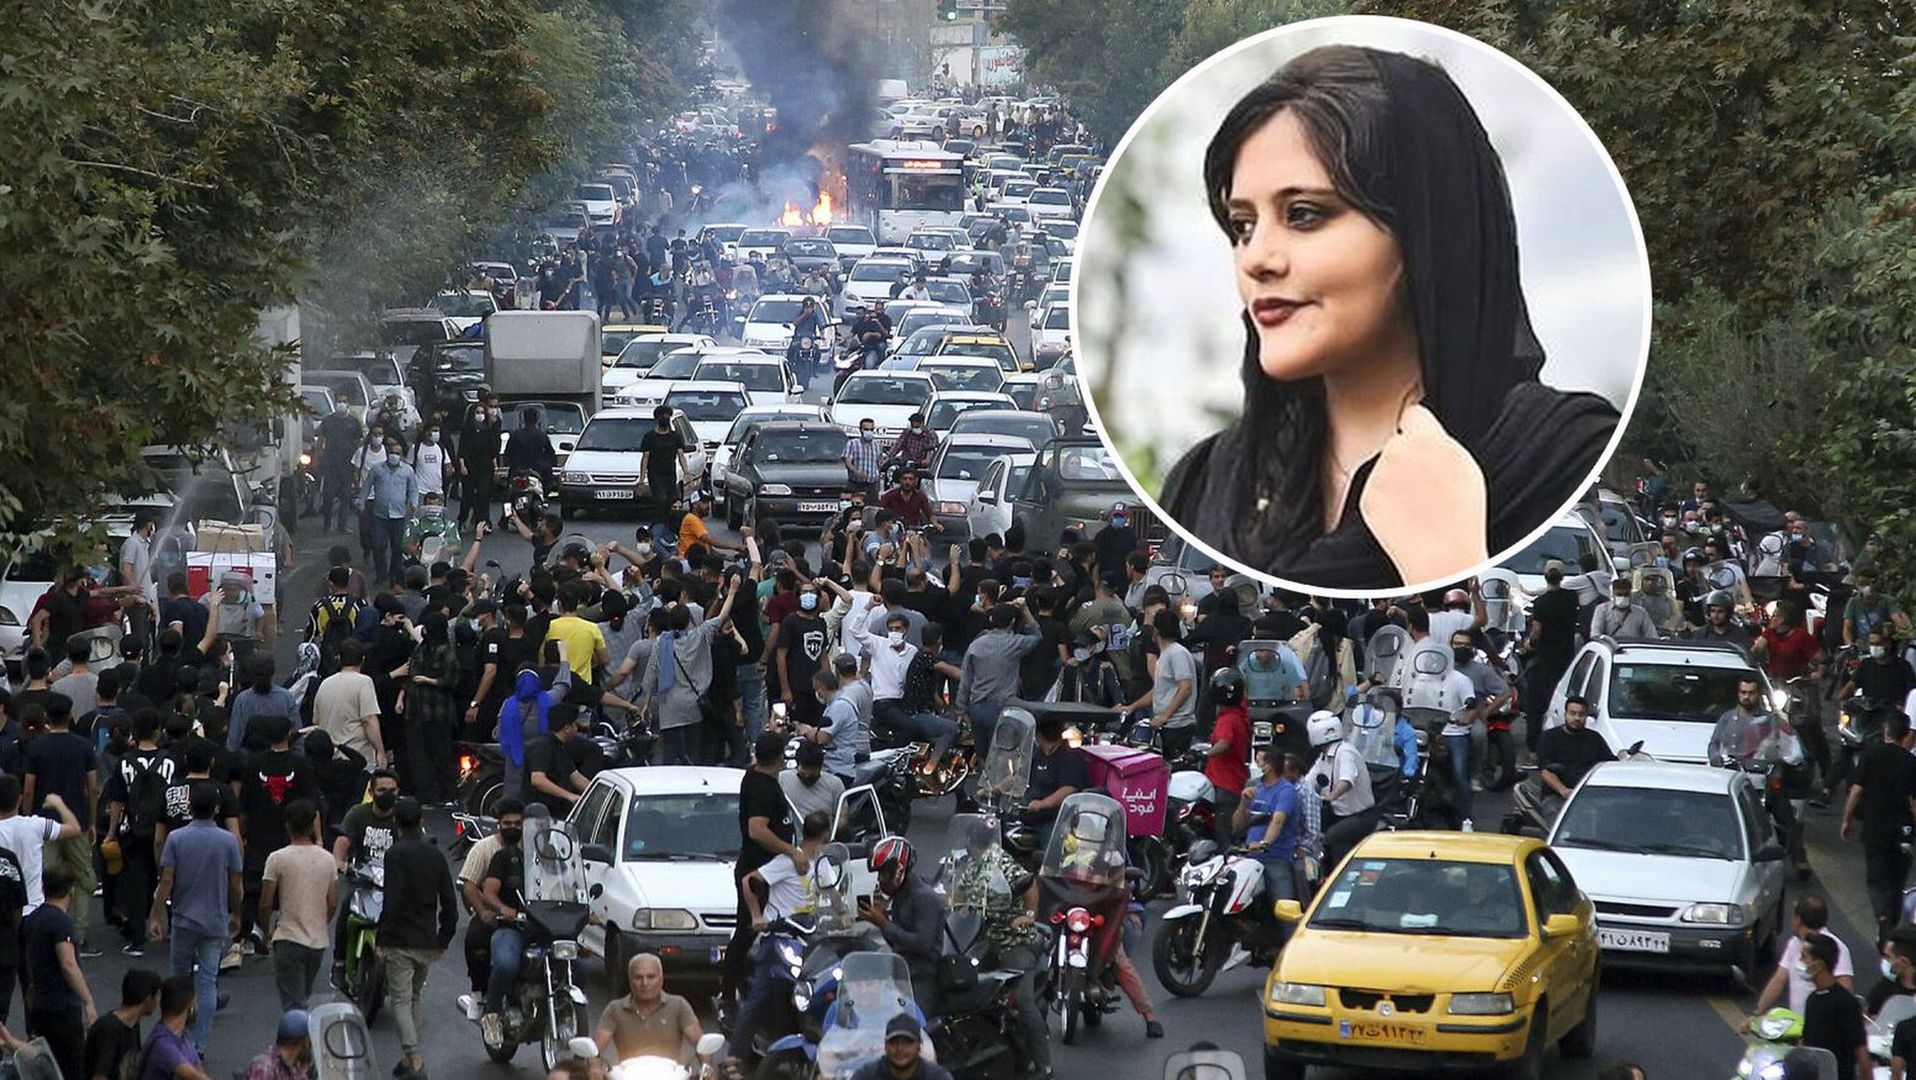 Po śmierci Mahsy Amini w kilkudziesięciu miastach Iranu rozpoczęły się rozruchy, które z różnym natężeniem trwają do dziś. Teheran, 21 września 2022 roku  